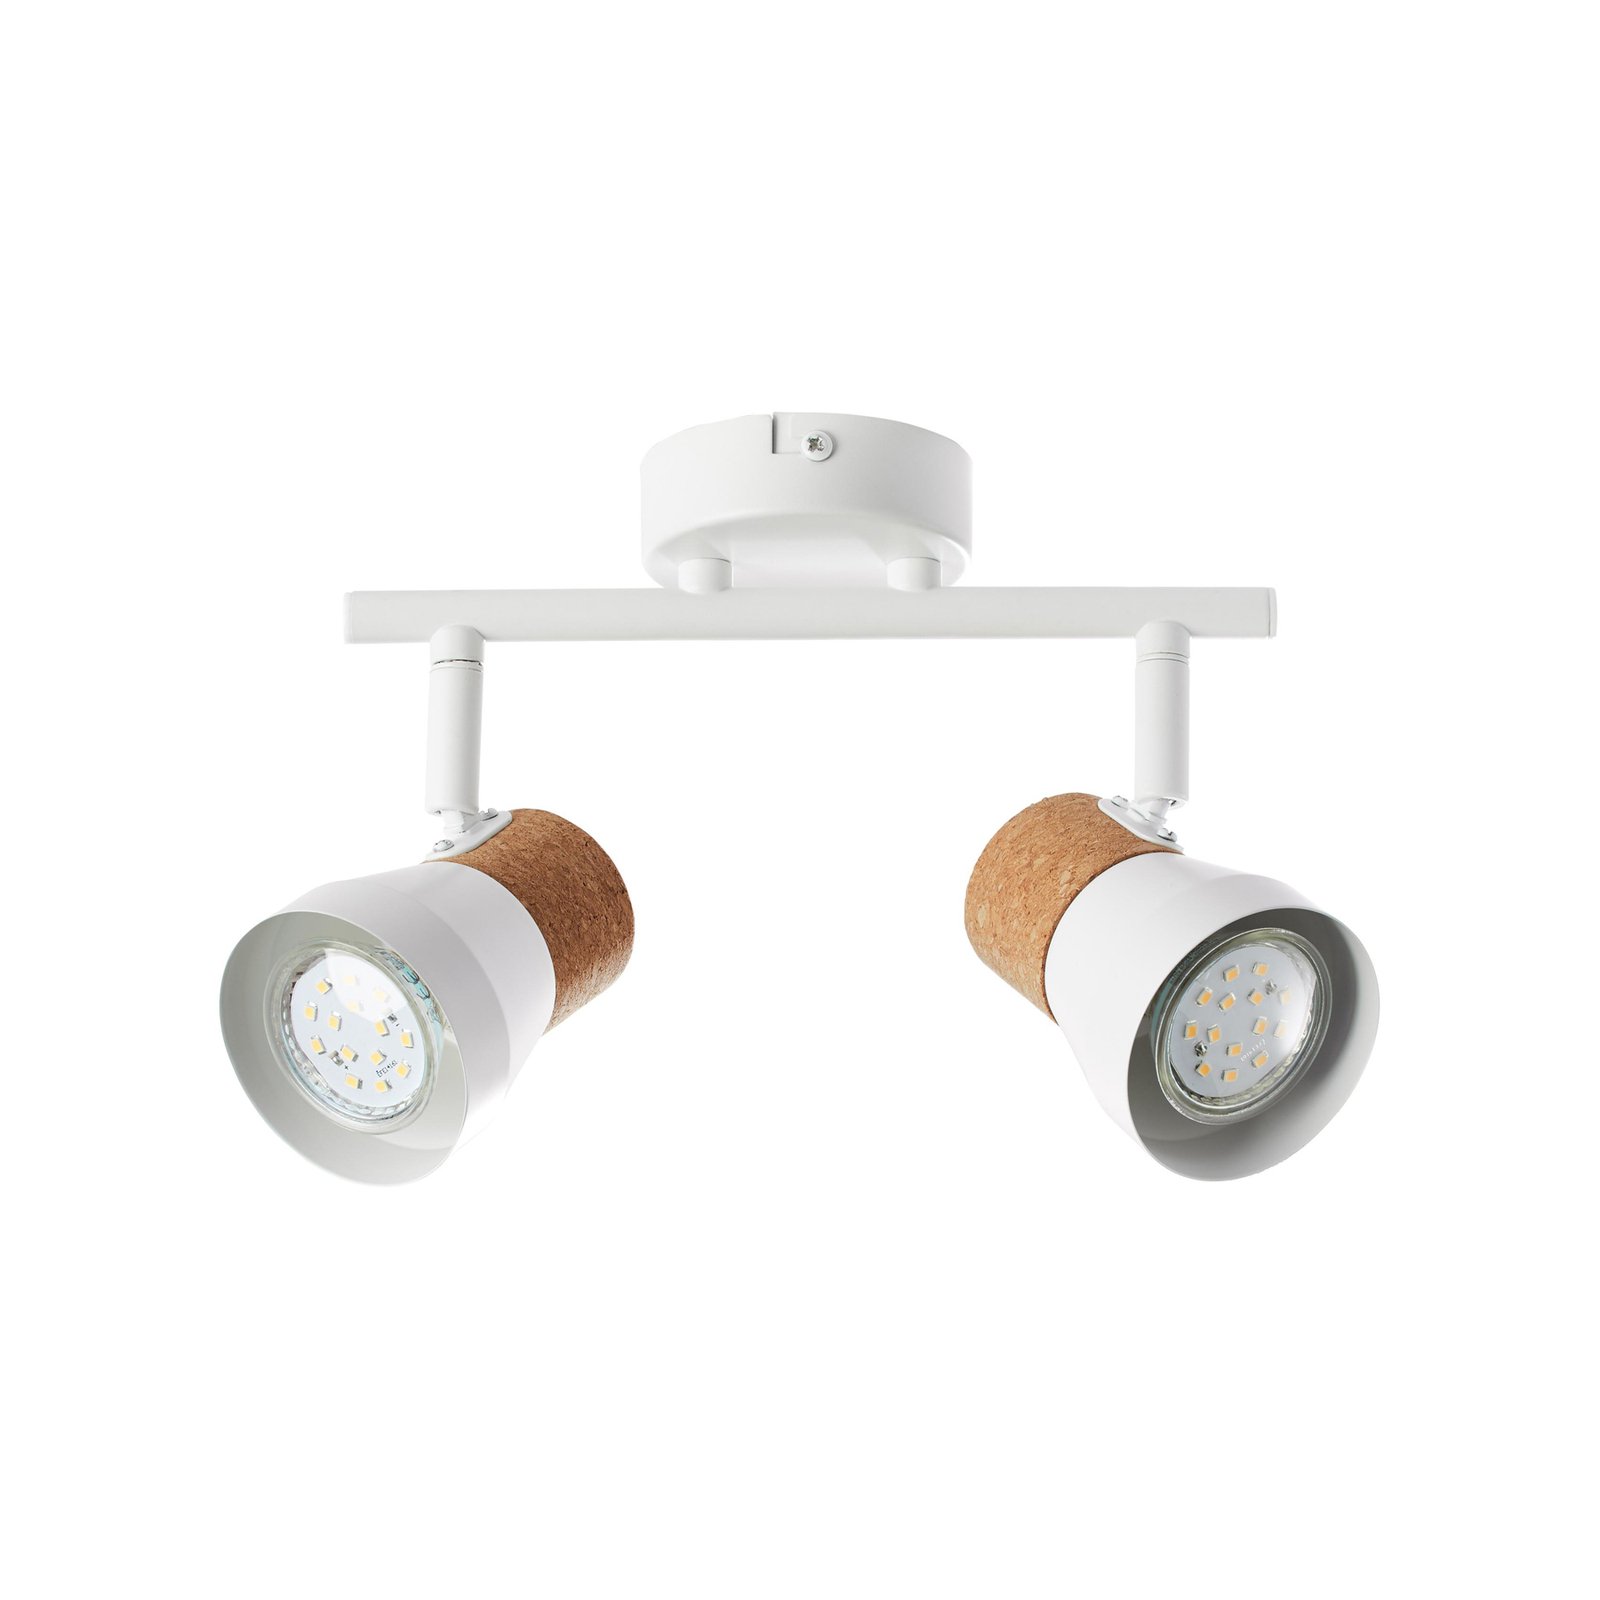 Прожектор за таван Moka, дължина 30 cm, бял/кафяв, 2-светли коркови лампи